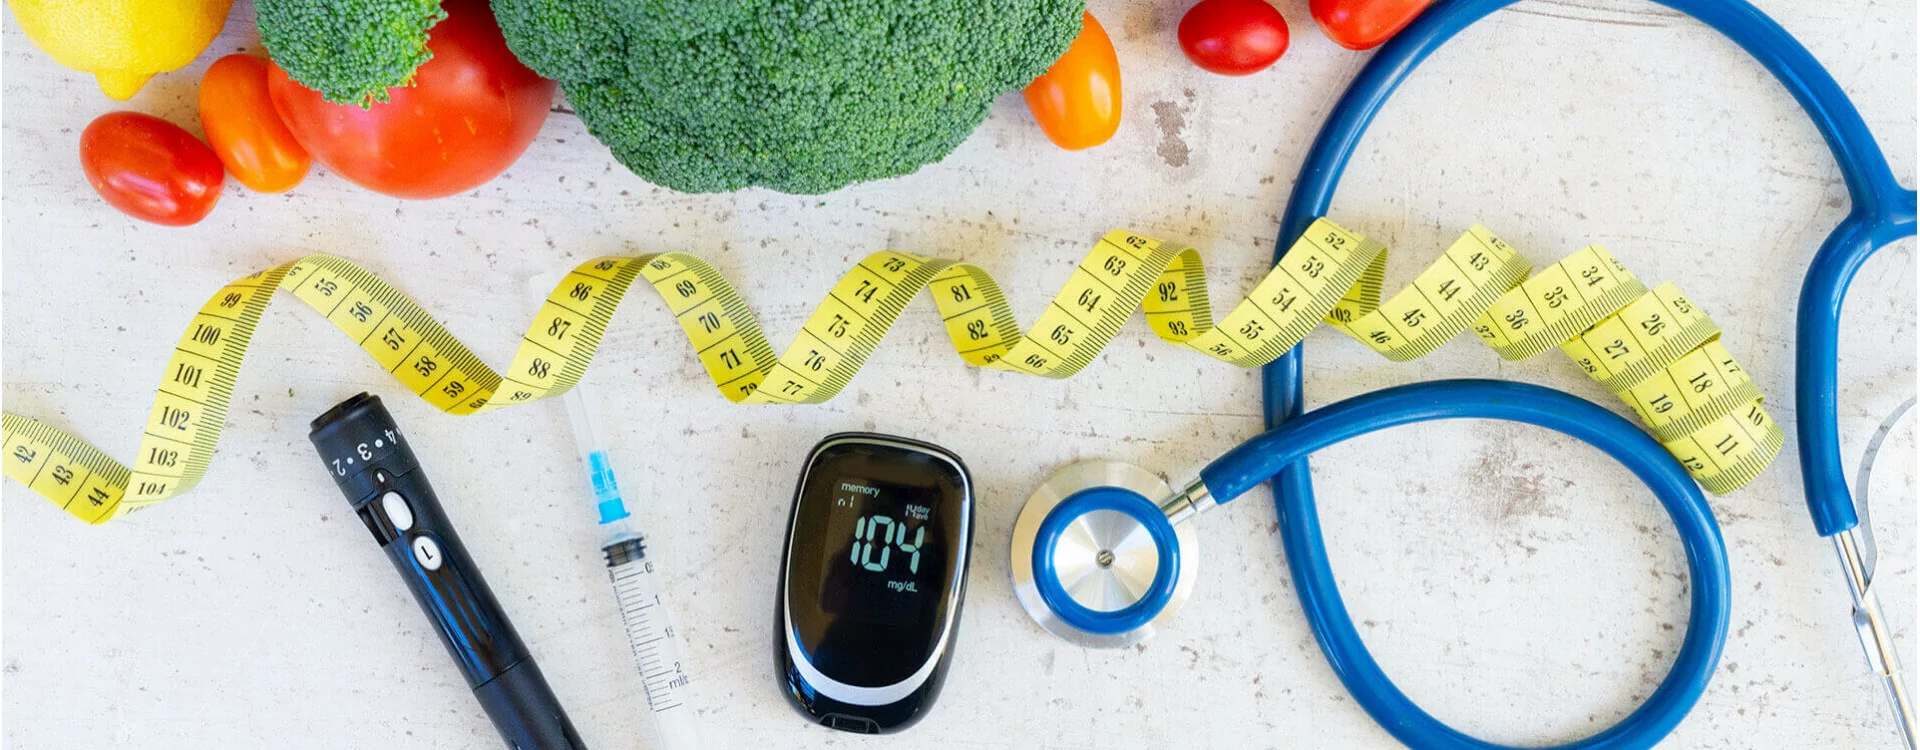 Diabète de type 2 : le rôle crucial de l’alimentation